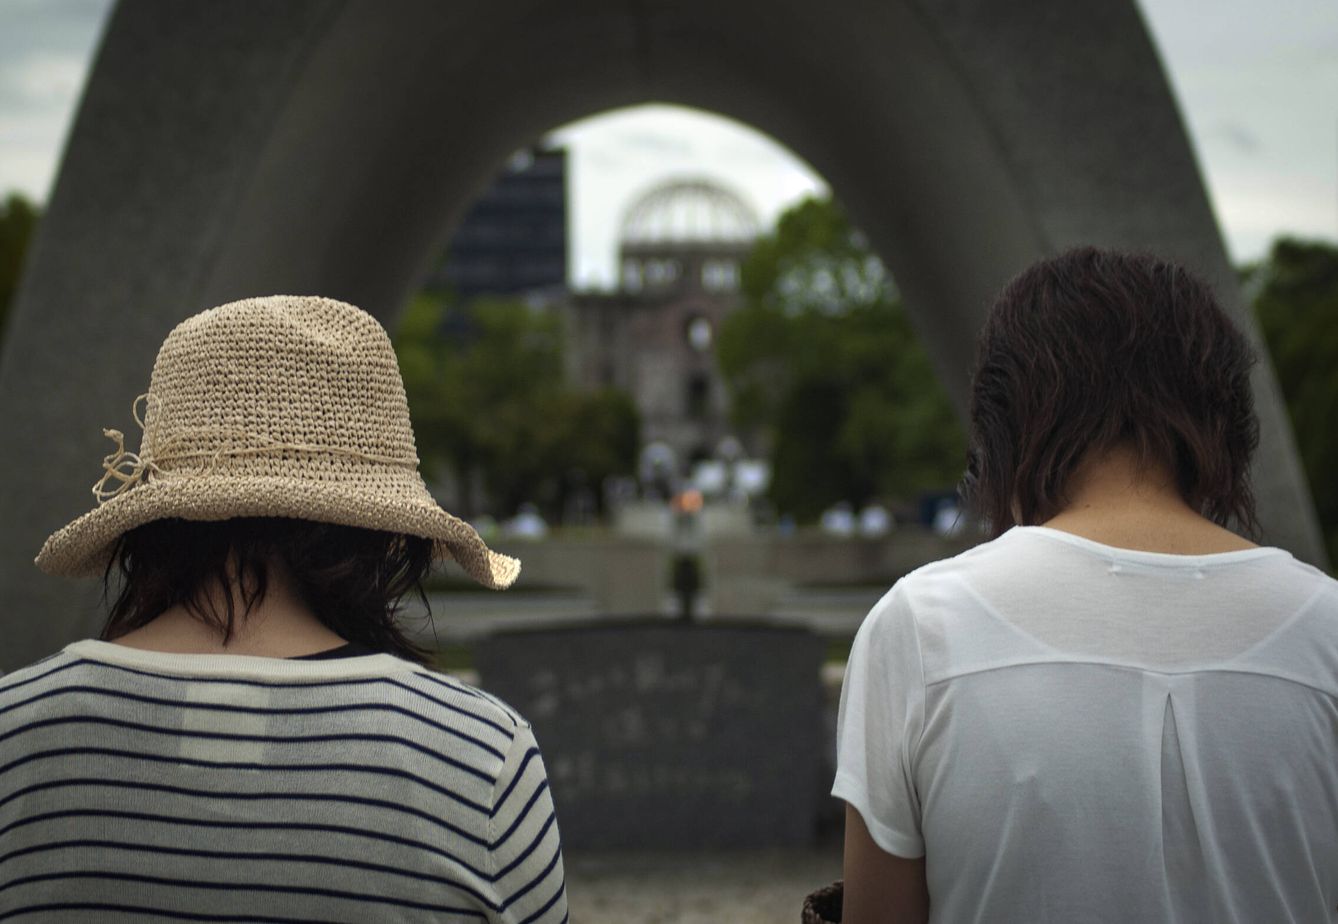 Dos jovenes, rezando ante el cenatofio de Hiroshima en memoria de las víctimas de la bomba atómica. TOÑI GUERRERO